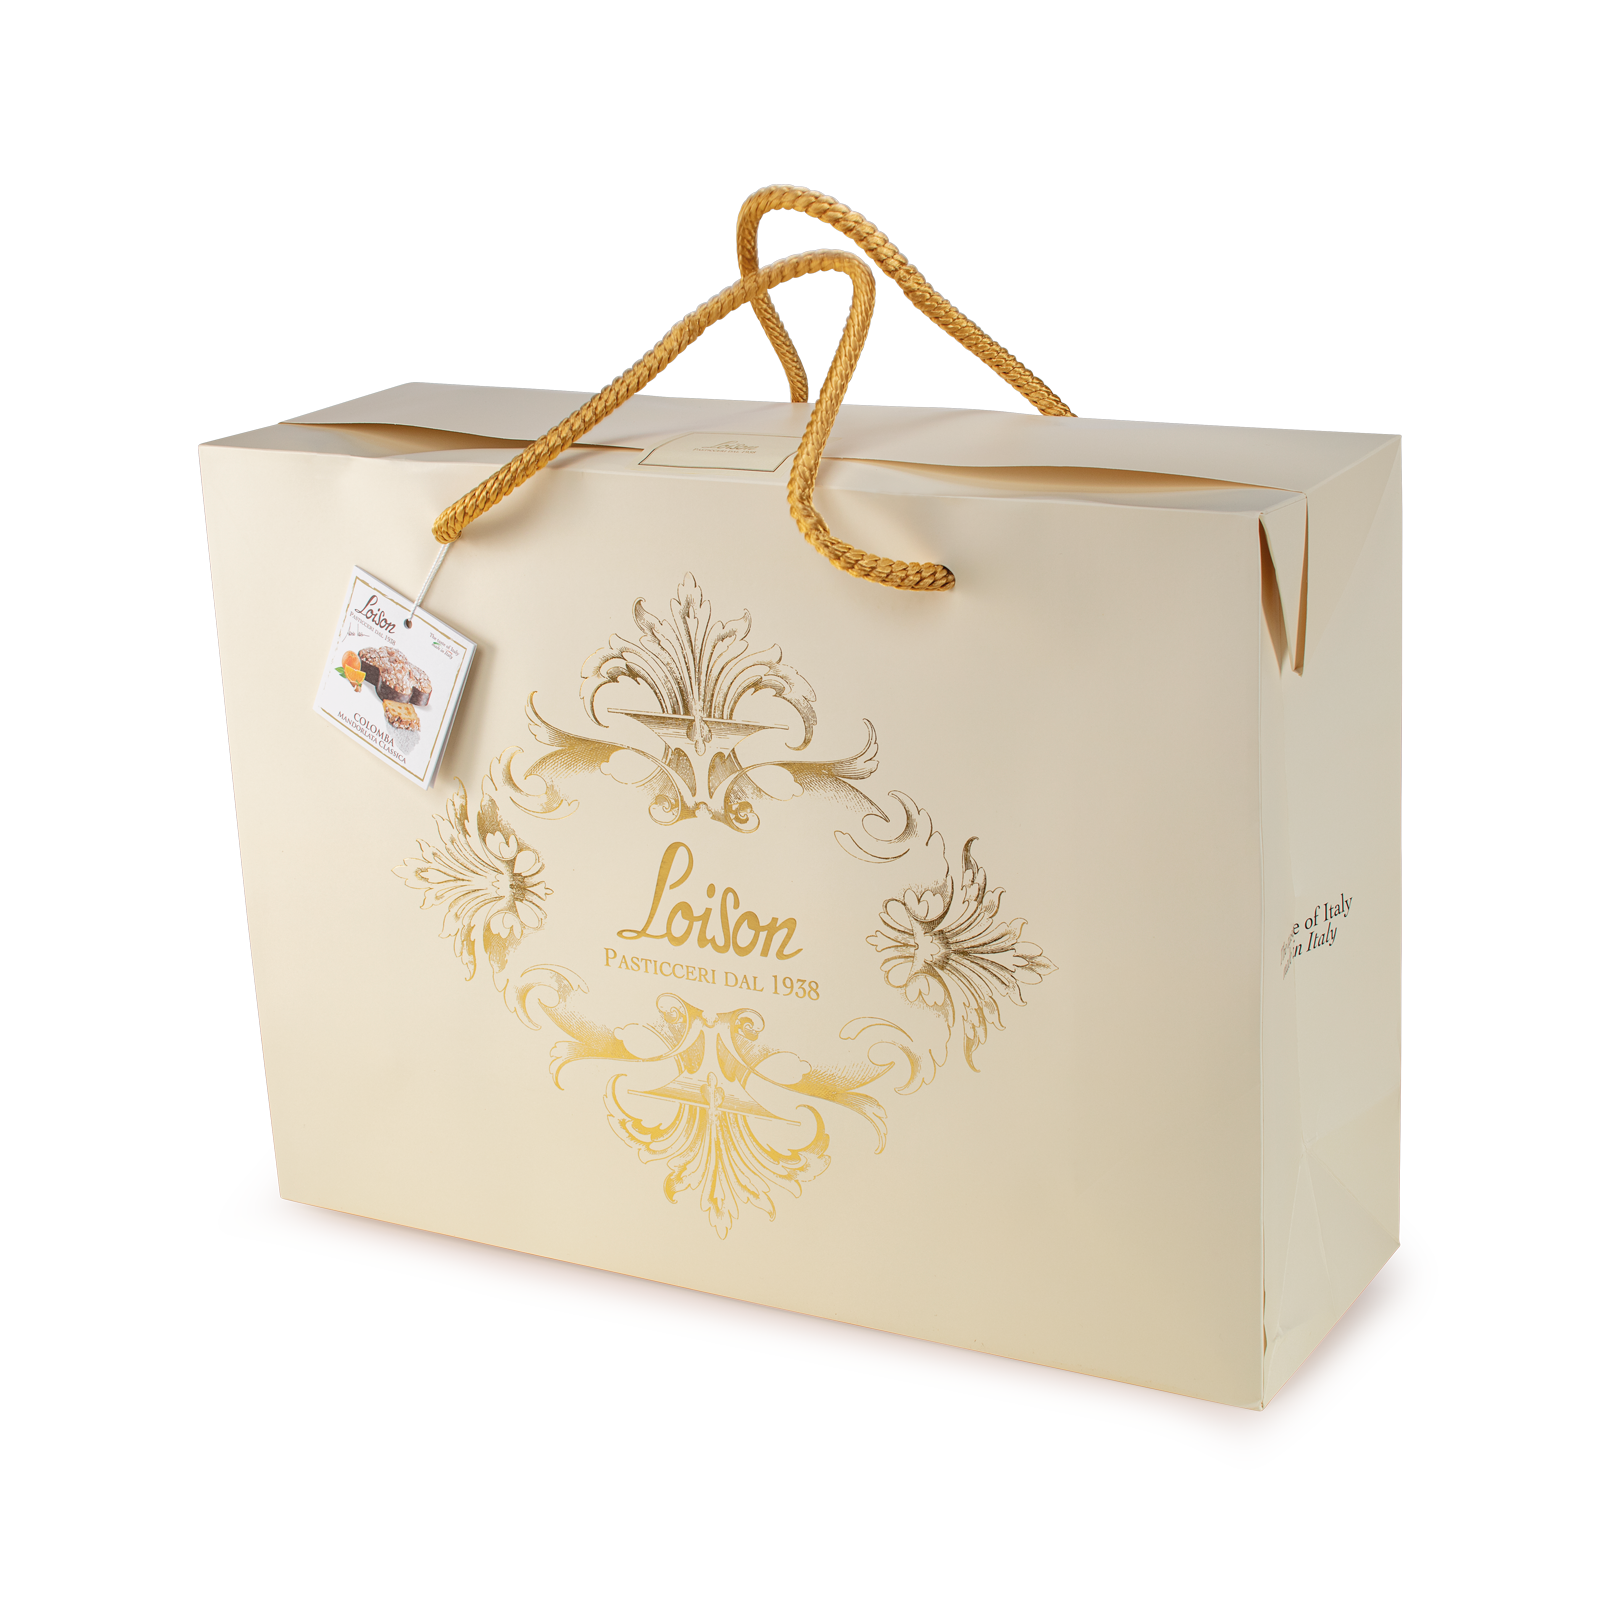 Colomba Magnum classica artigianale in scatola shopper regalo